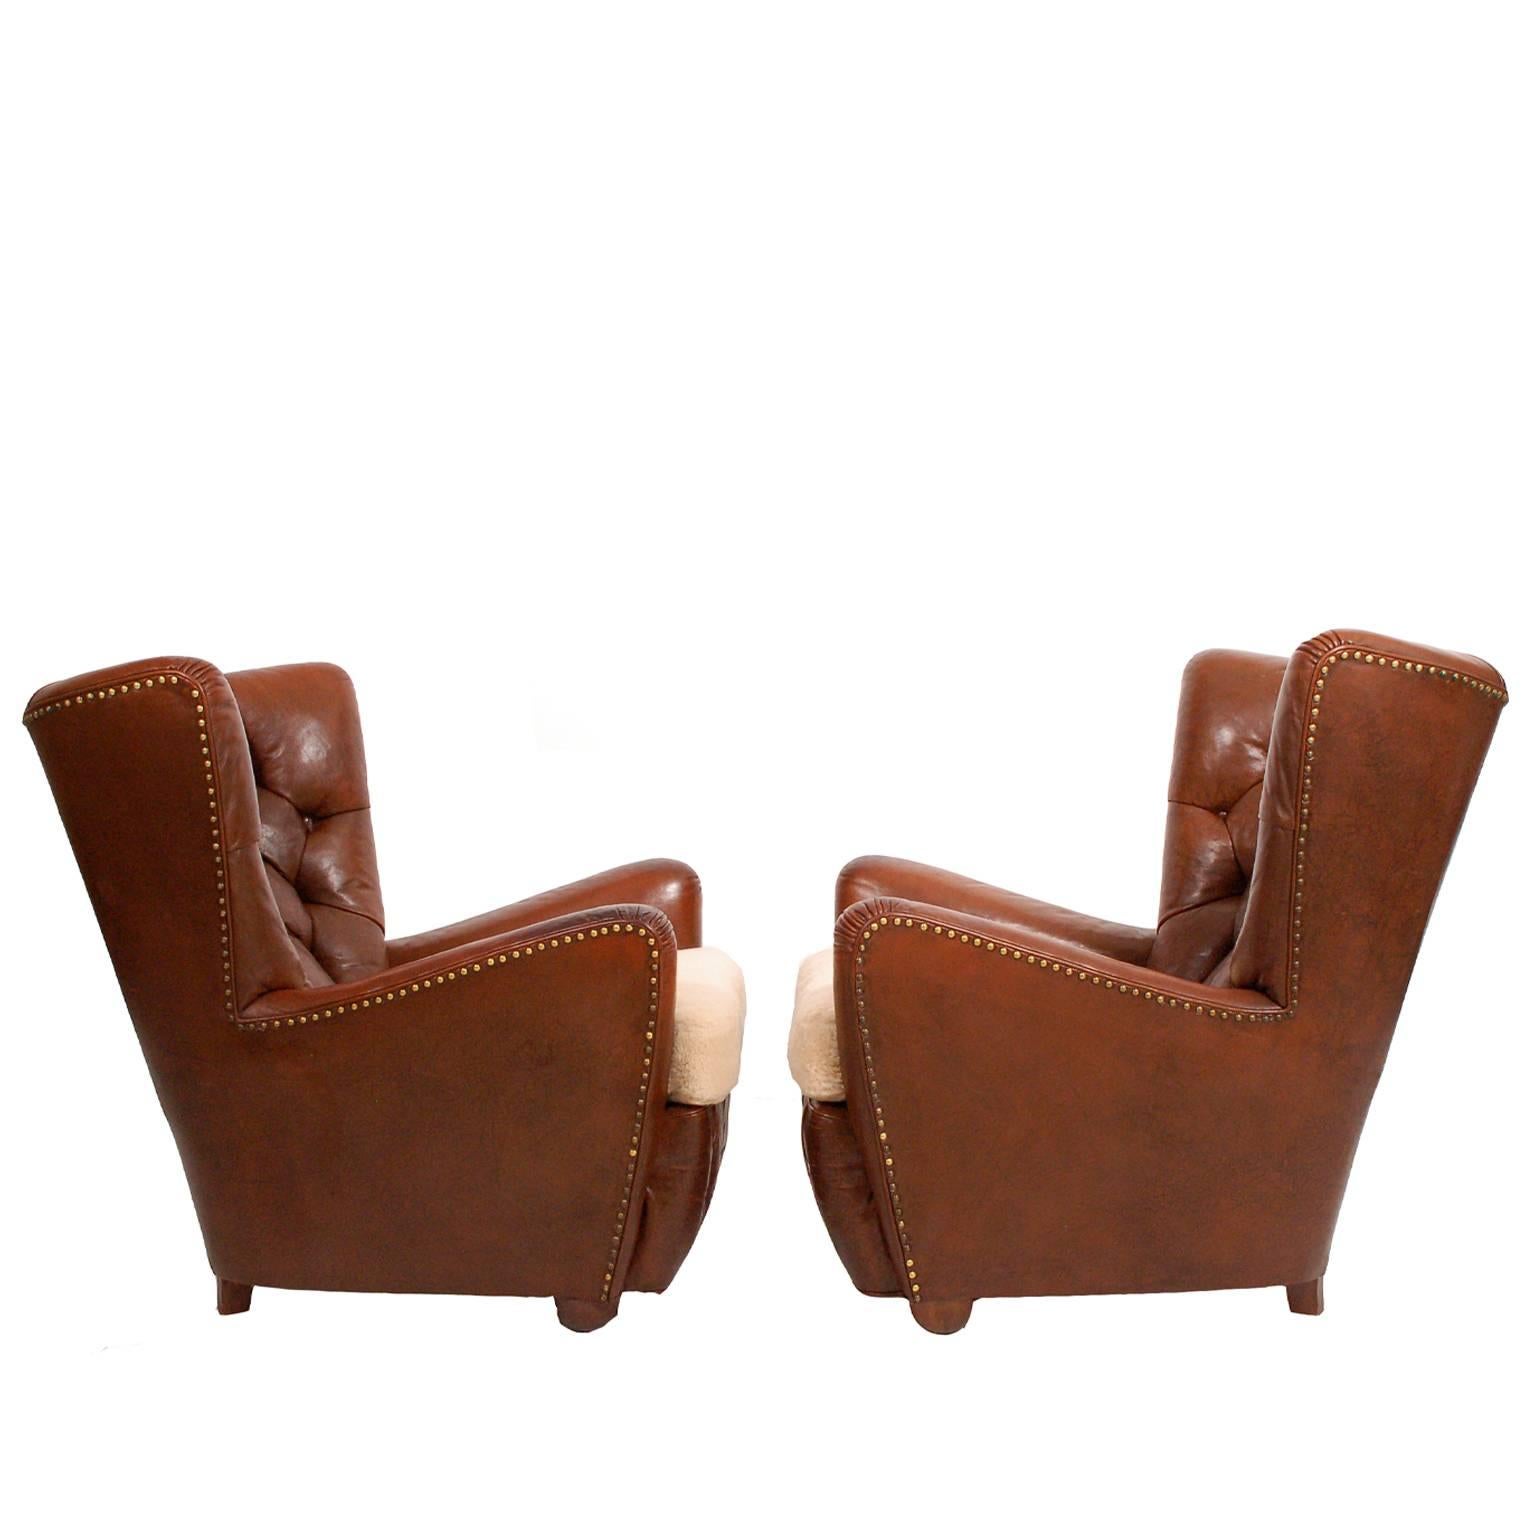 Paar dänische Sessel aus den 1930er Jahren (Leder)